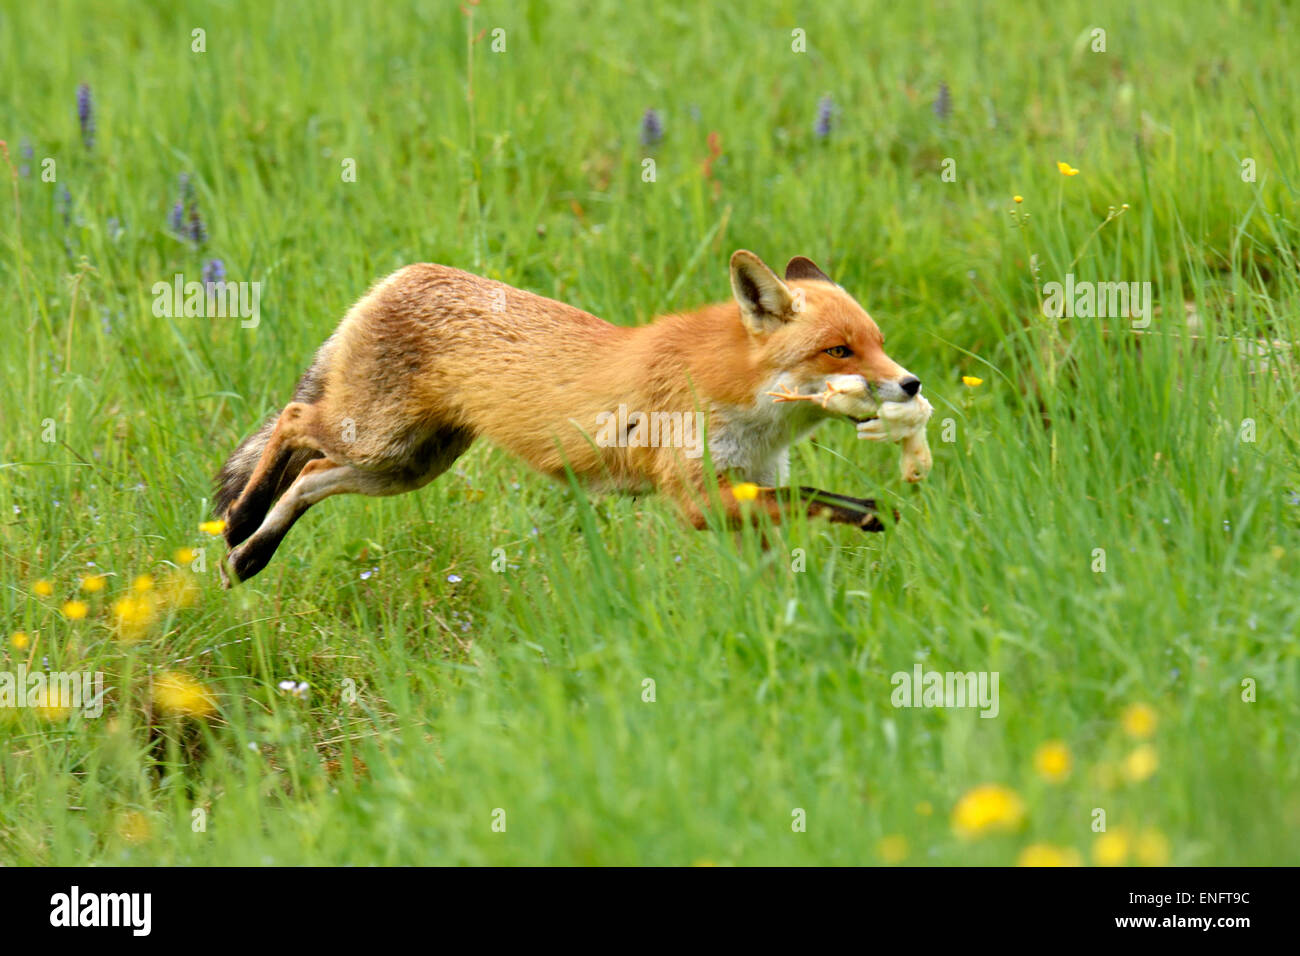 Rennender Fuchs Stockfotos und -bilder Kaufen - Alamy